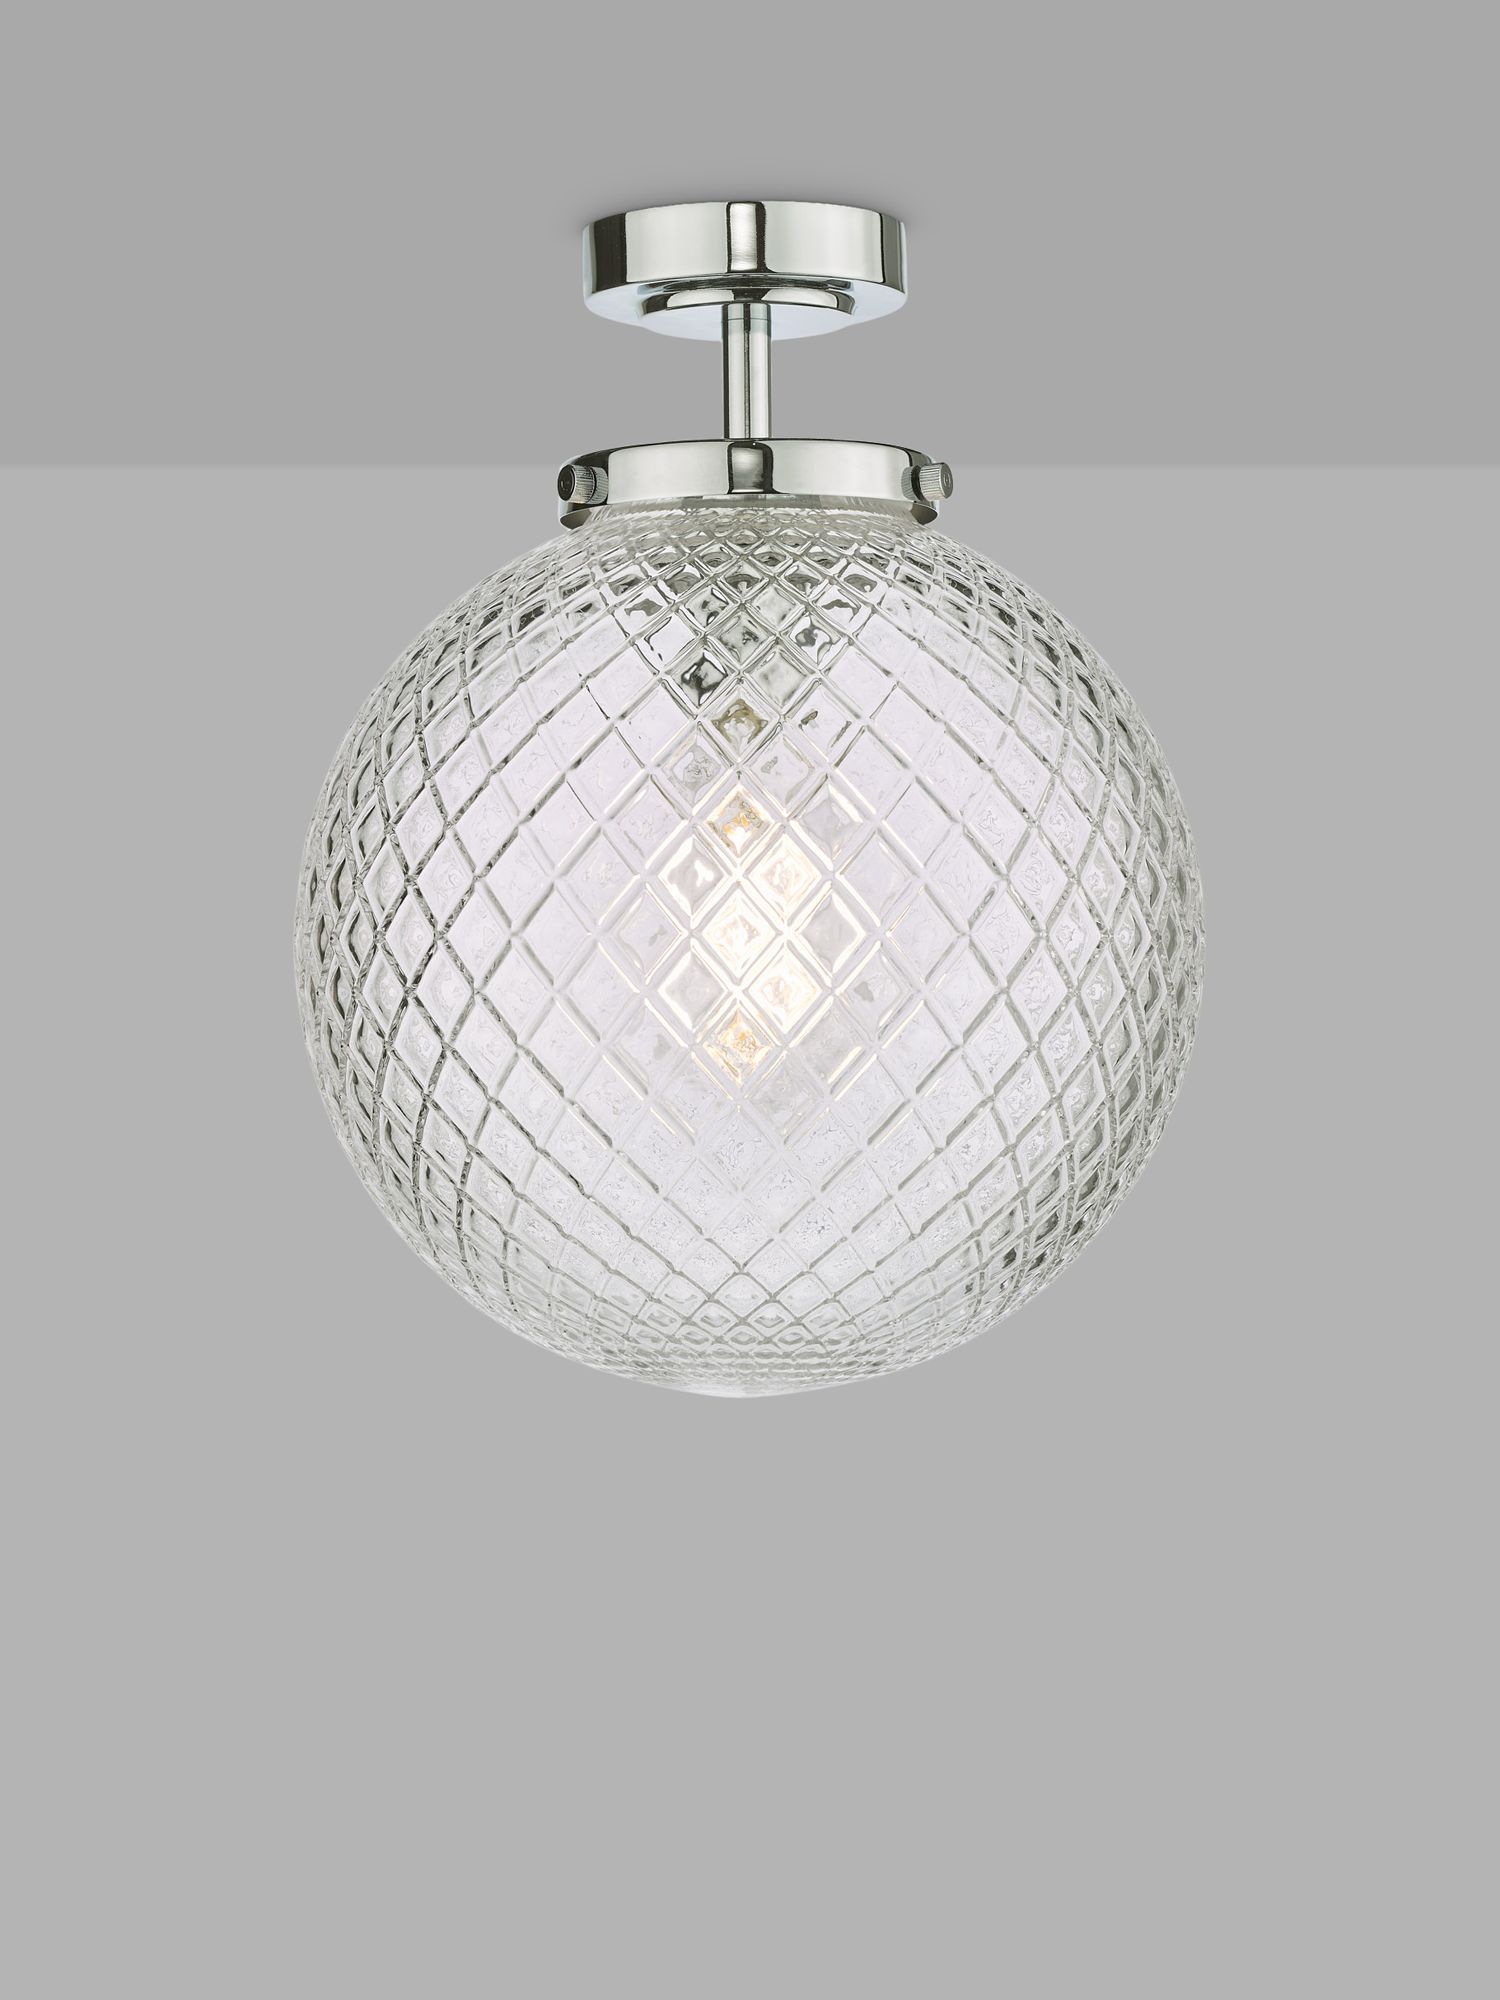 Photo of Där wayne textured glass bathroom ceiling light clear/polished chrome